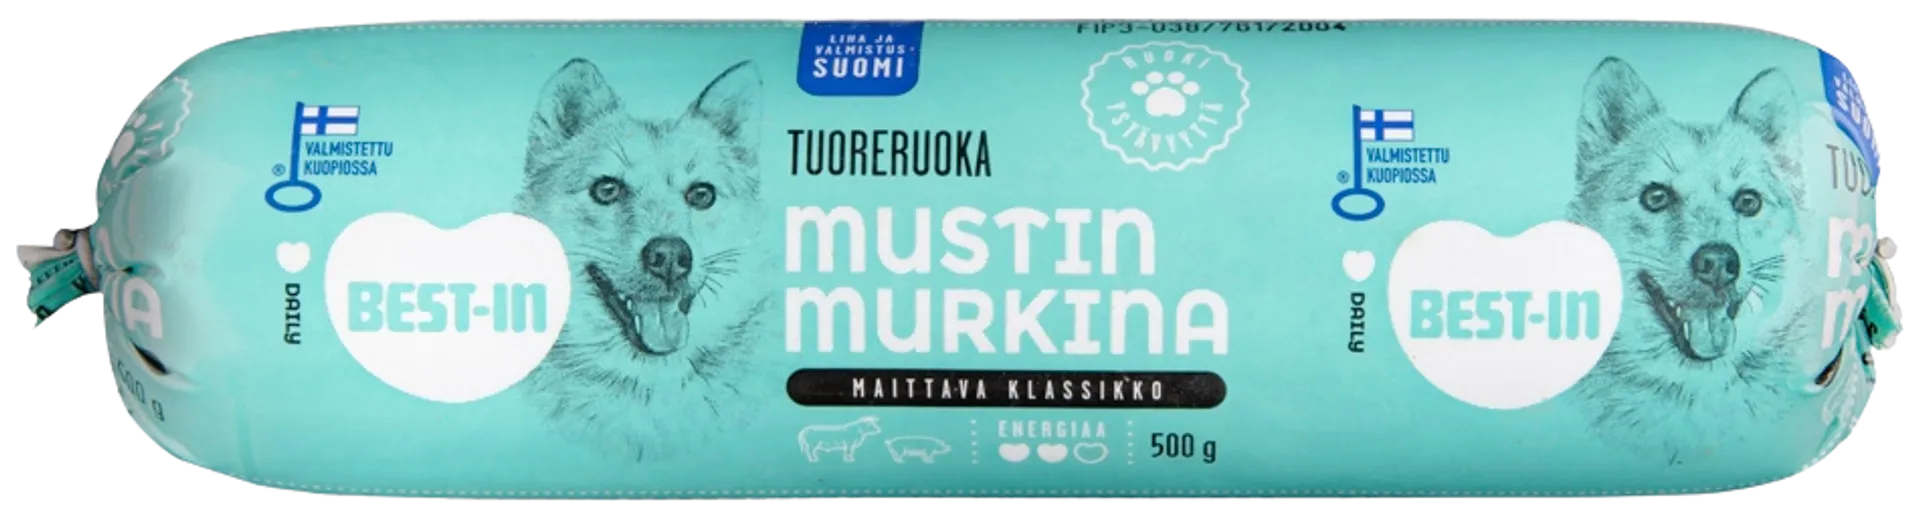 Best-In Mustin Murkina Koiran Tuoreruoka 500g